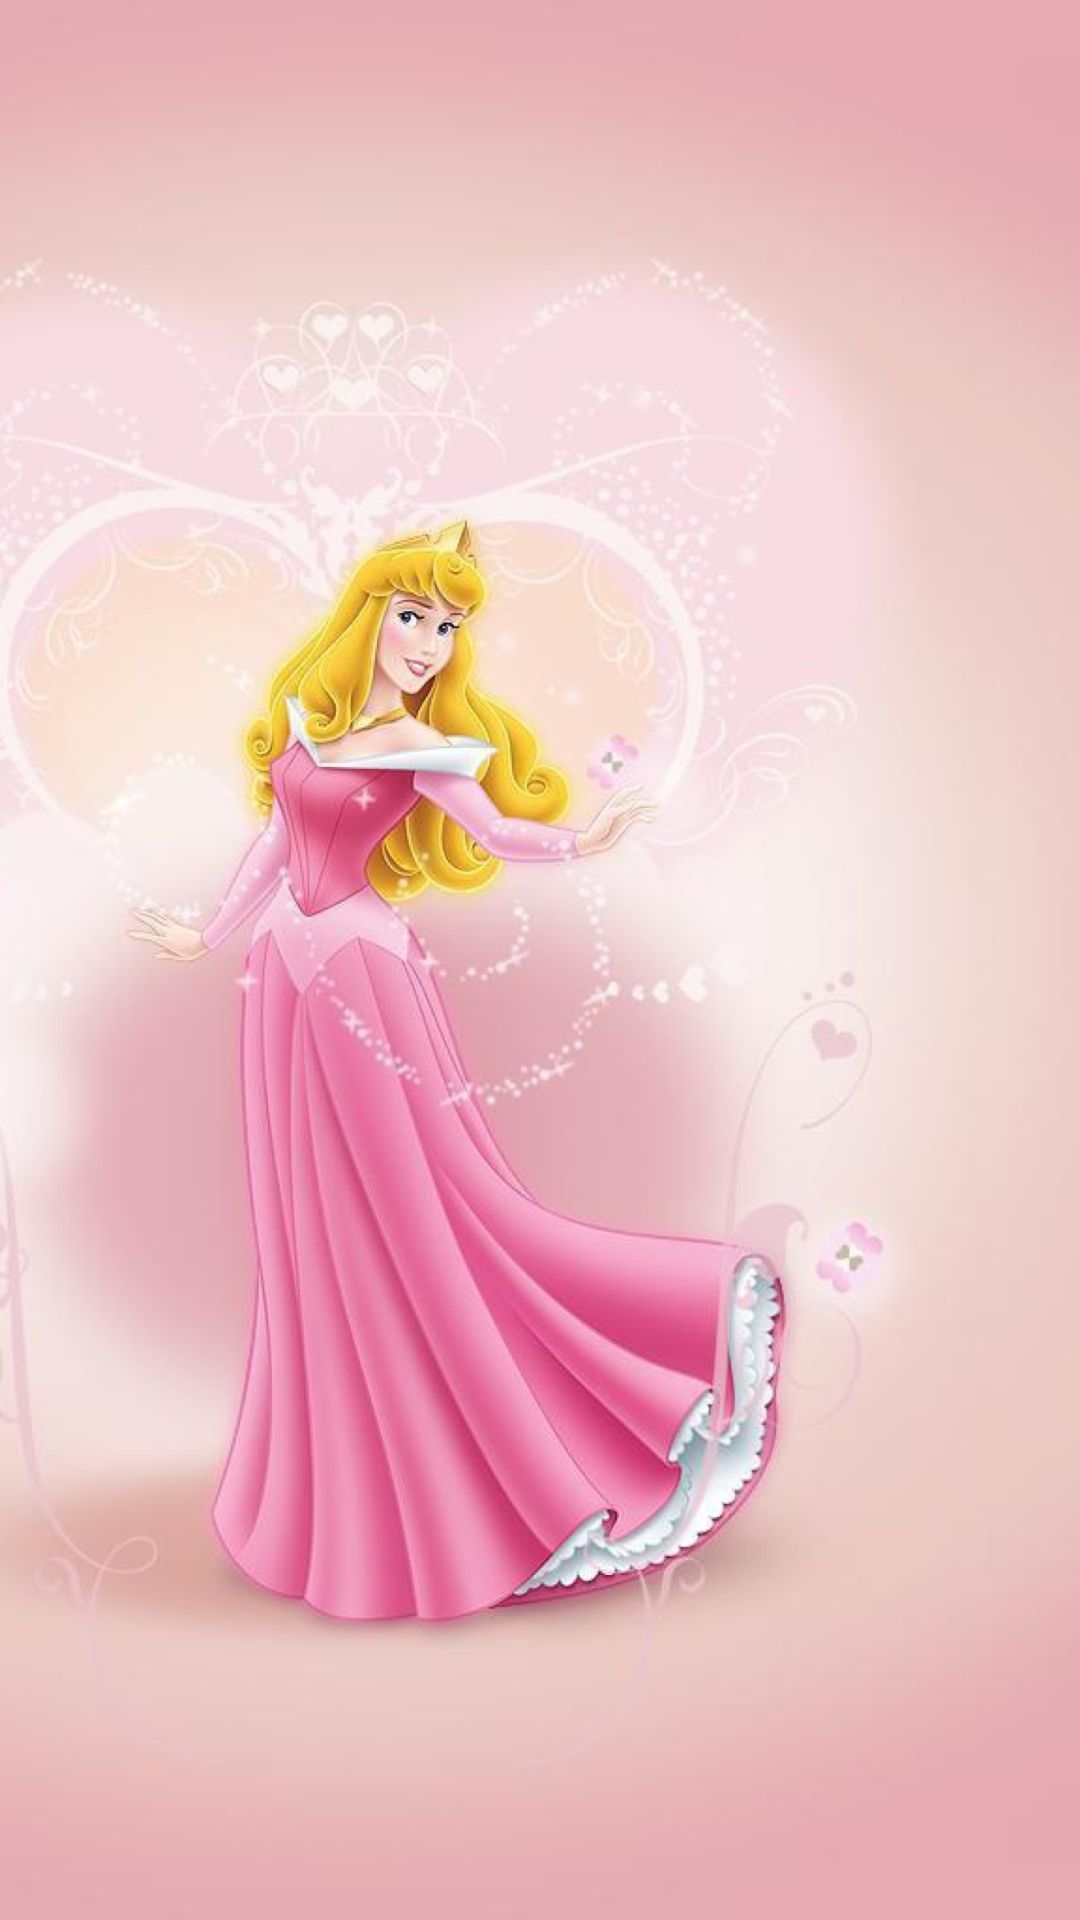 Disney Princesses iPhone Wallpaper Free Disney Princesses